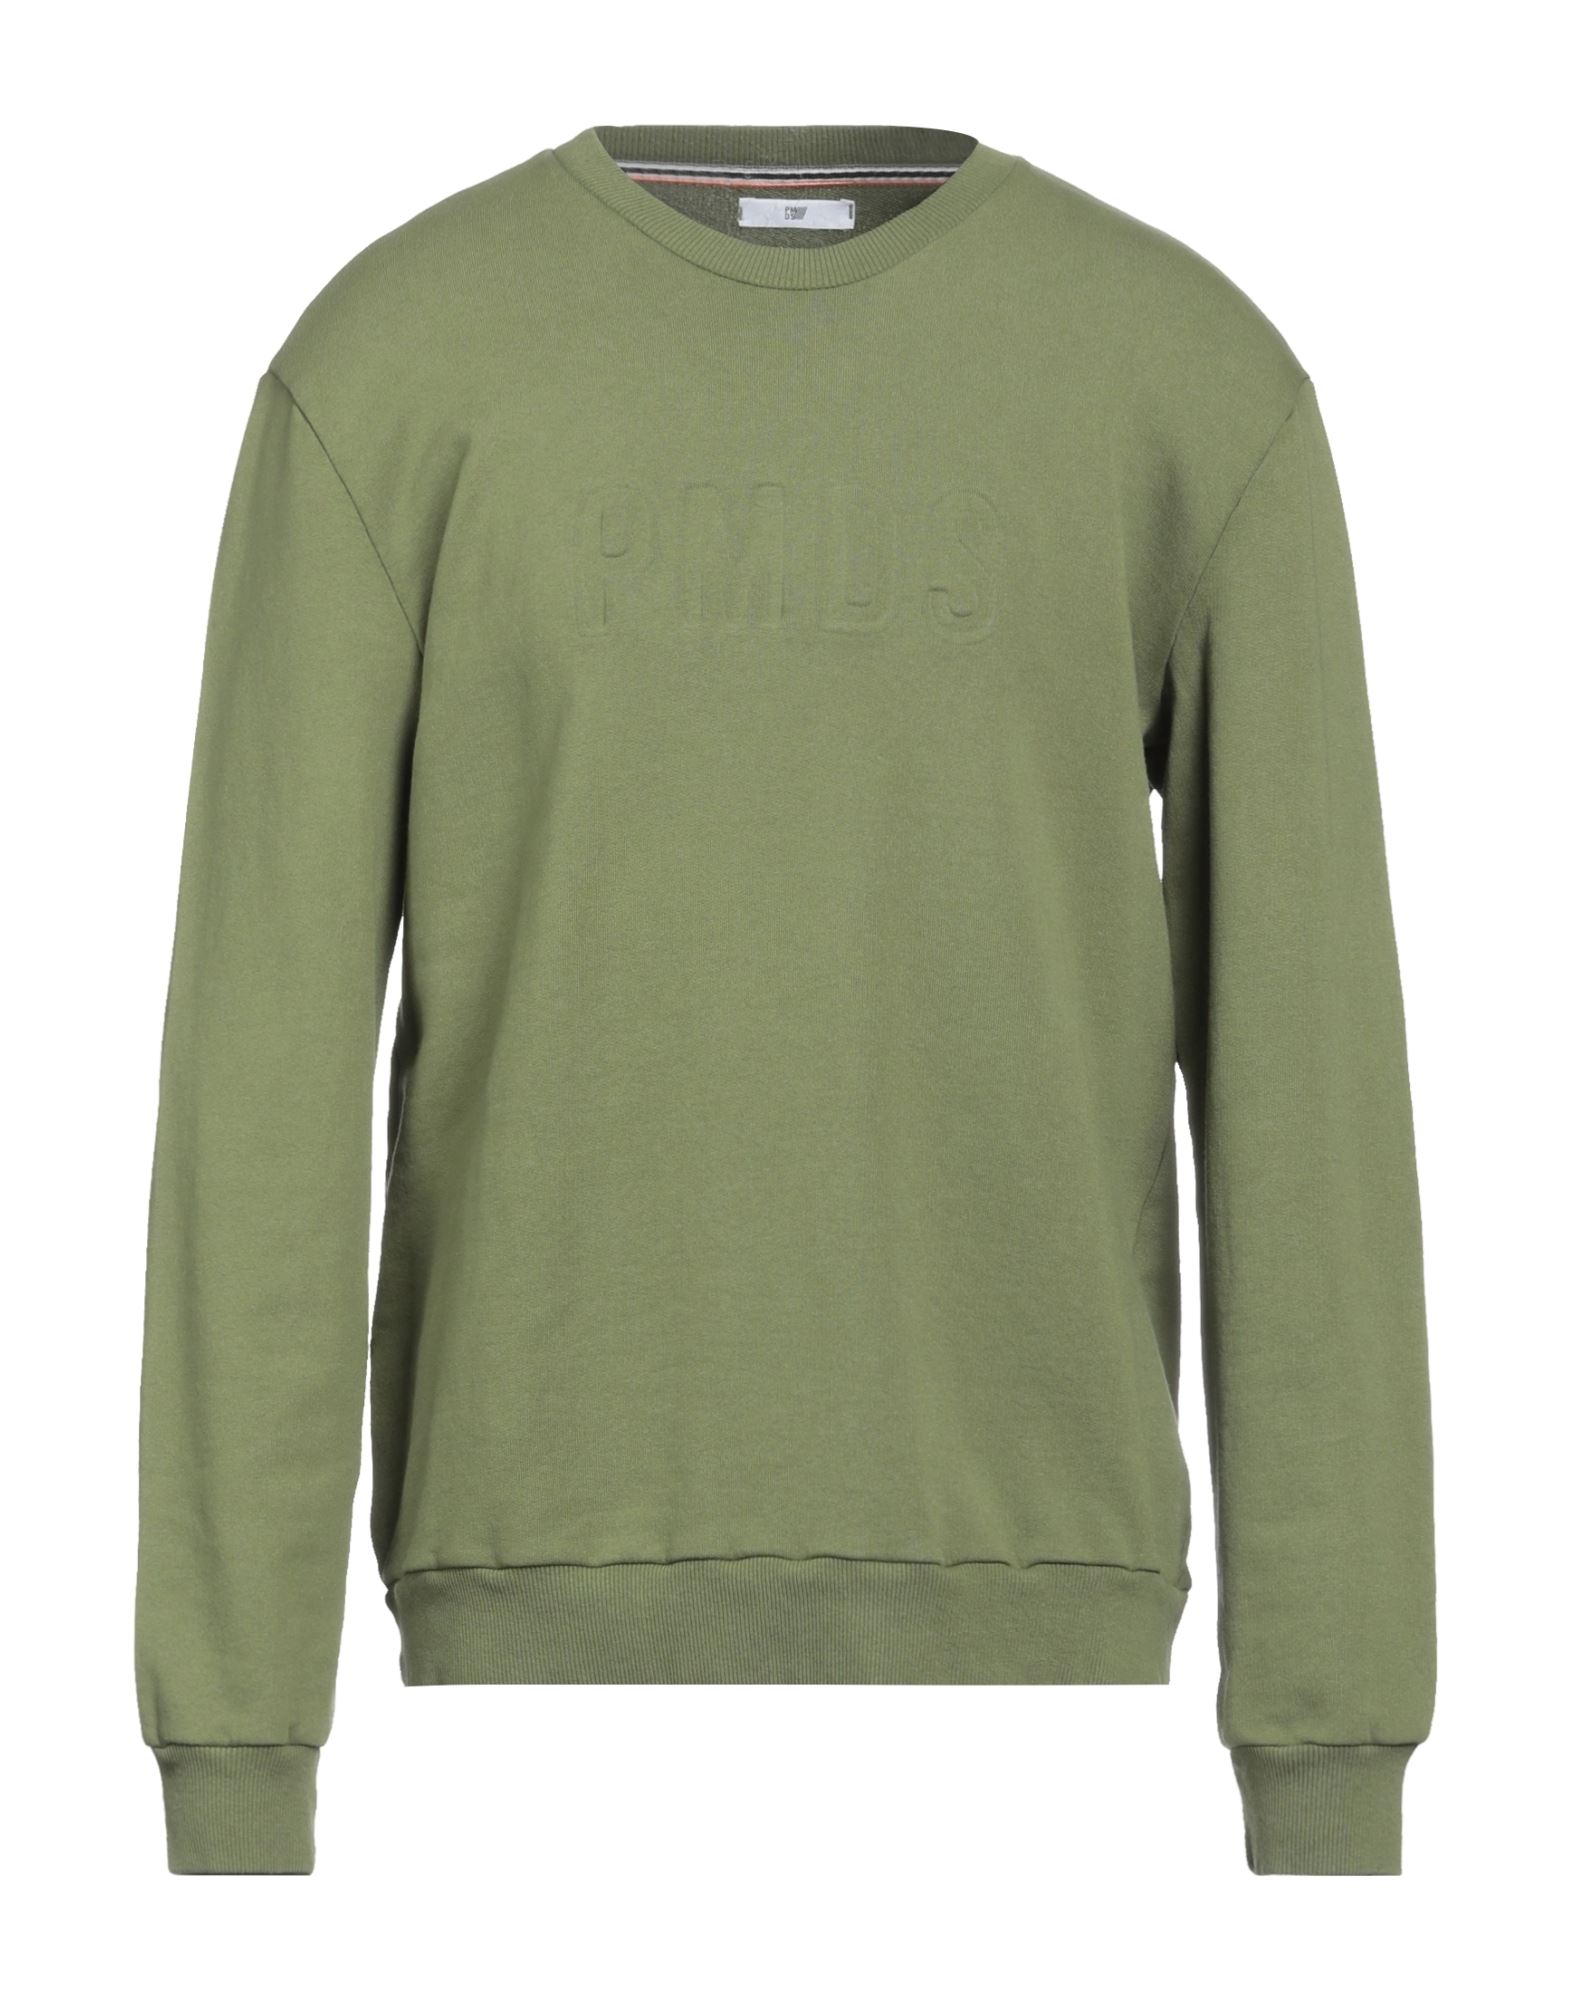 Pmds Premium Mood Denim Superior Sweatshirts In Green